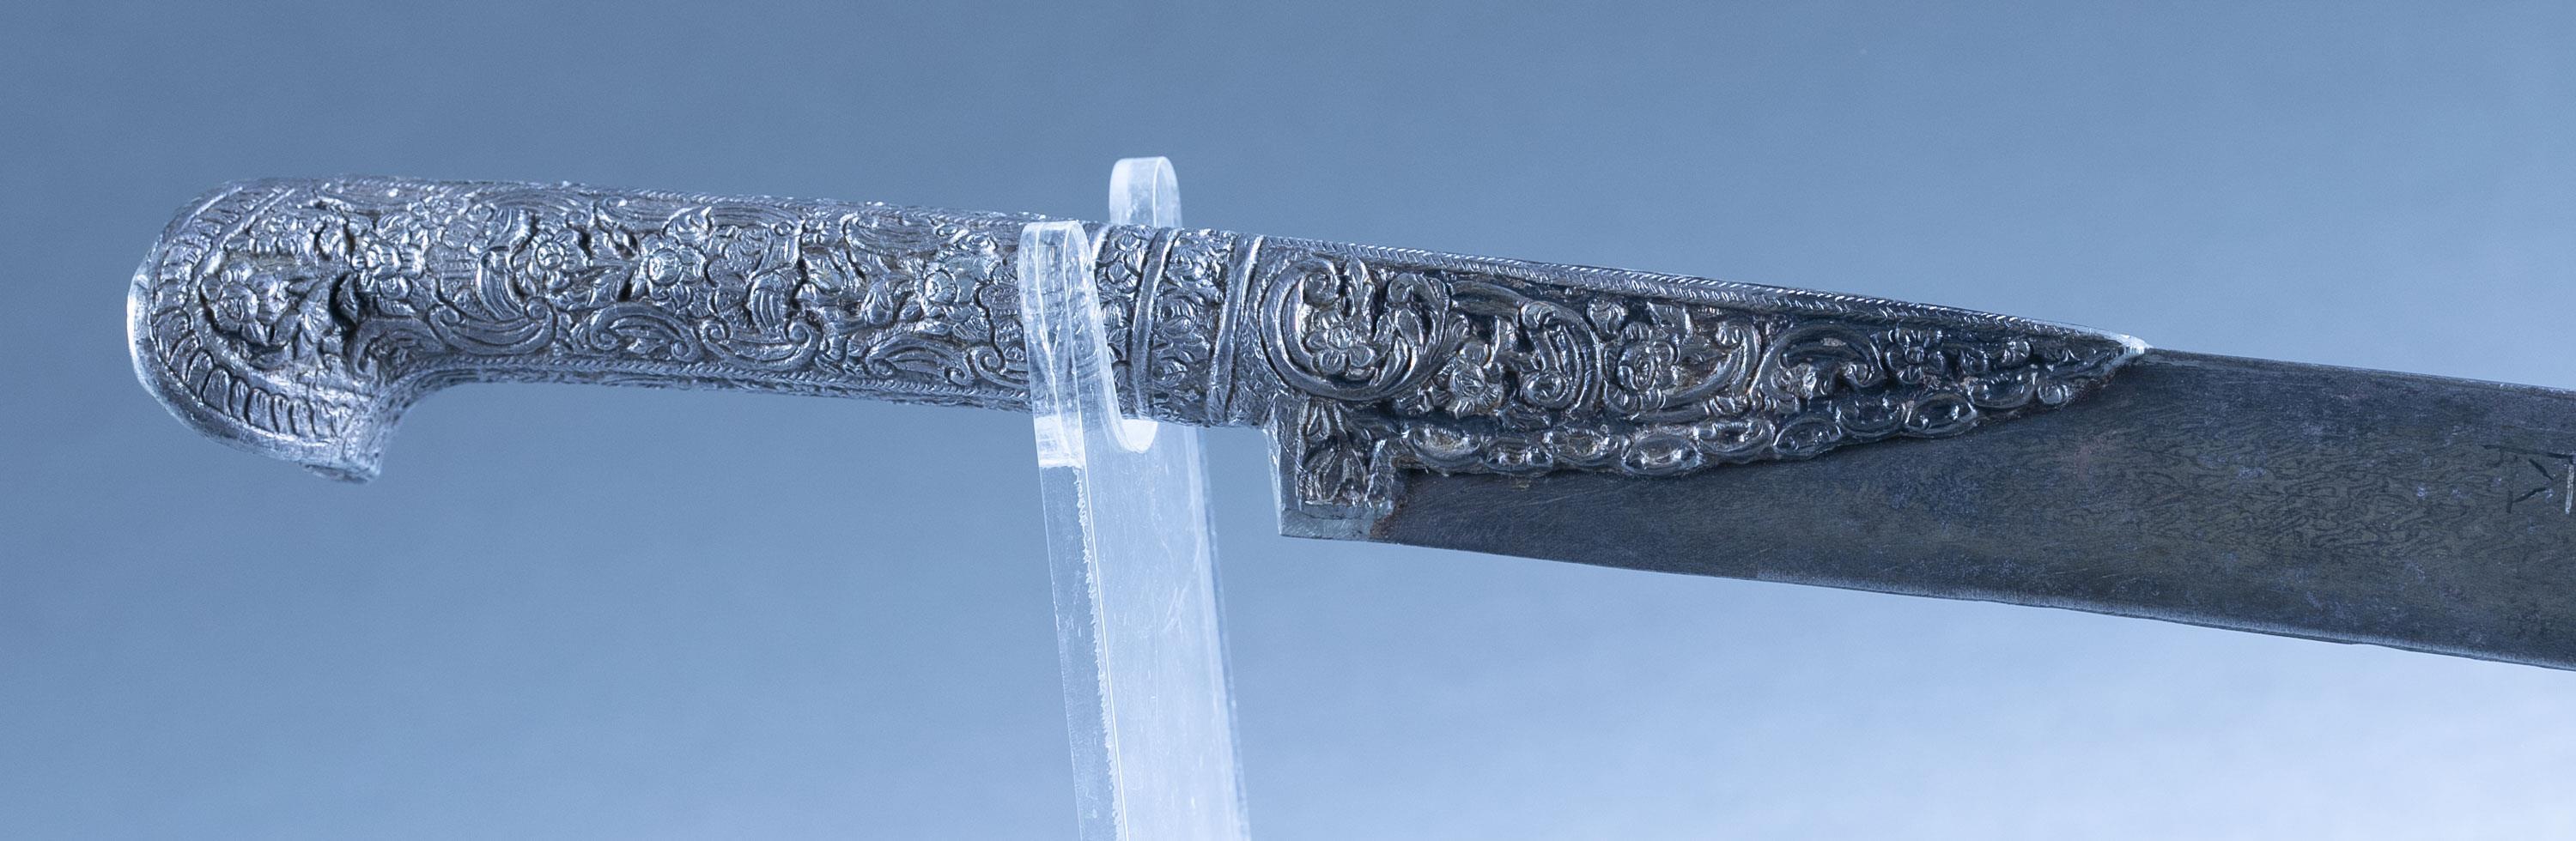 Ottoman Empire Yataghan sword